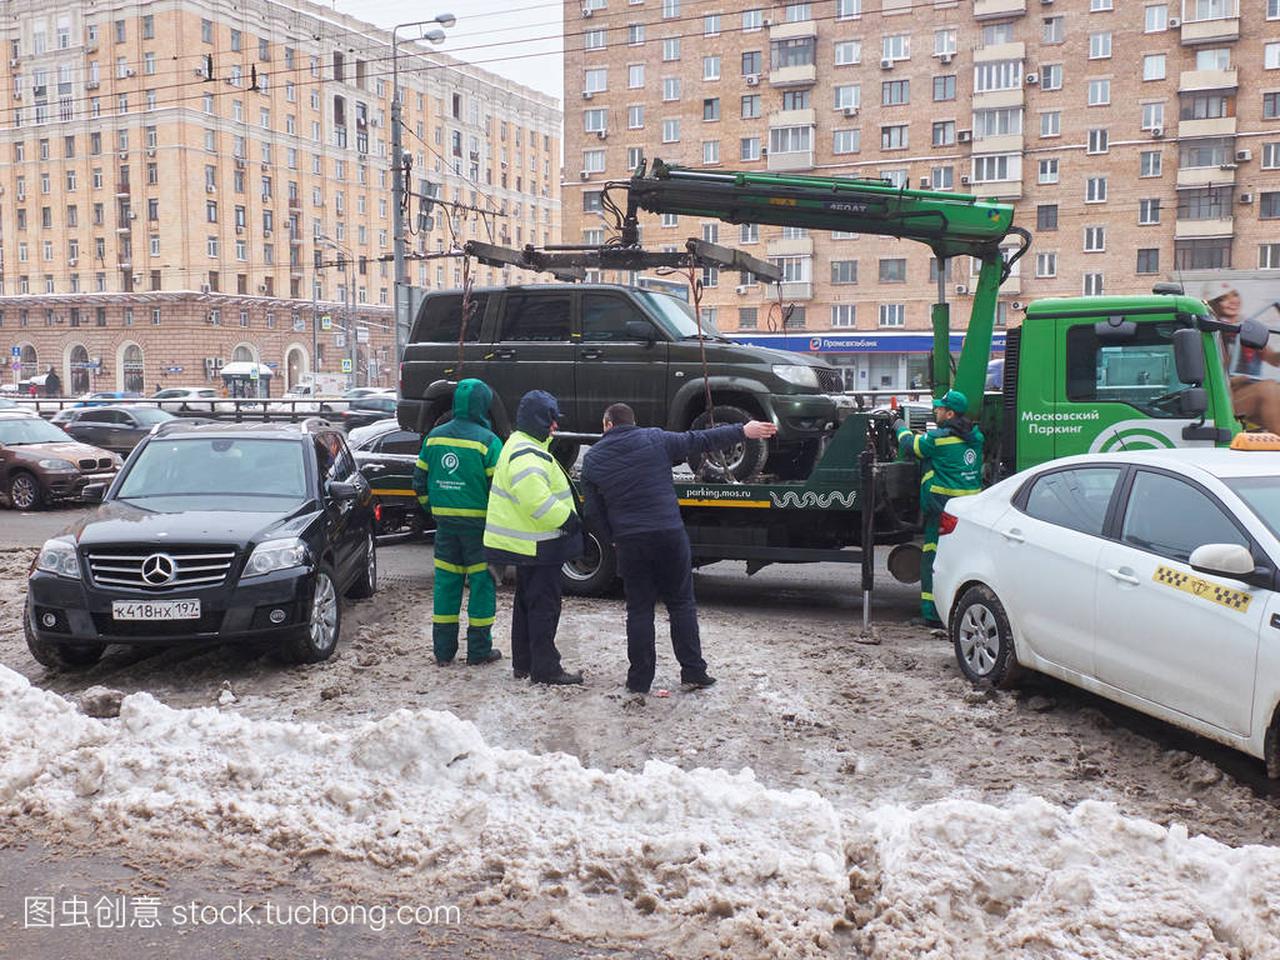 2018年2月6日, 莫斯科: 违反汽车停放规则的机